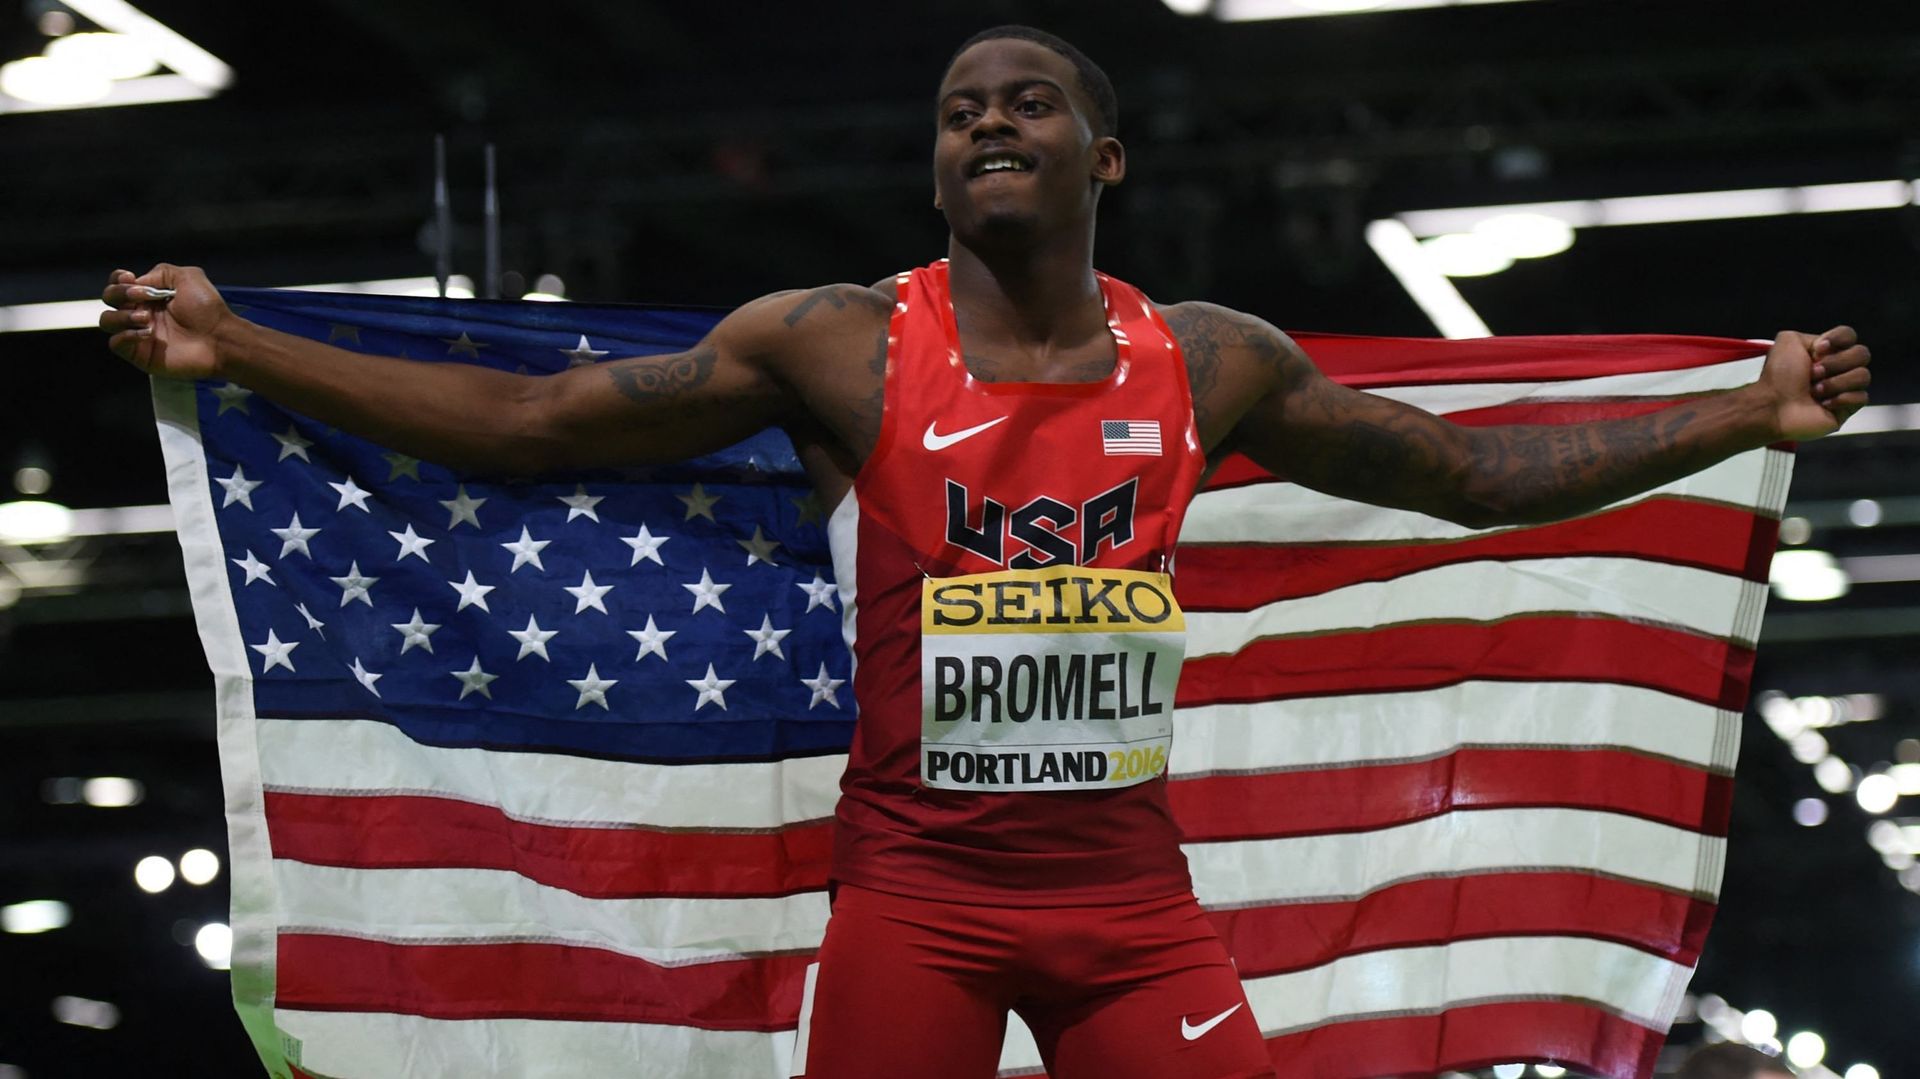 Trayvon Brommel célèbre sa victoire aux 60 mètres lors des championnats indoor à Portland.